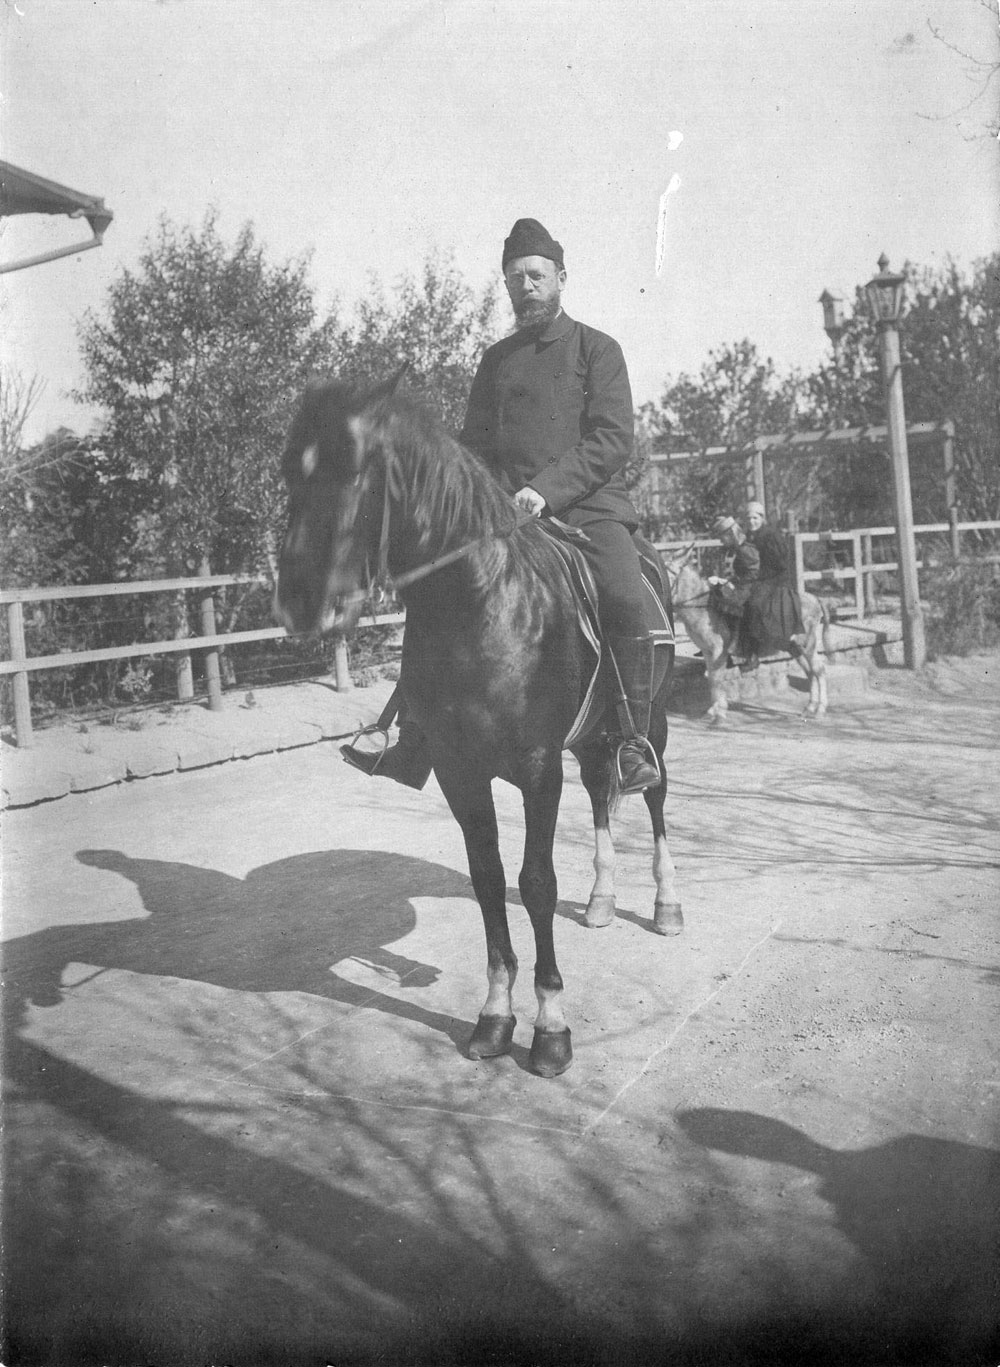 Hagelin on the horseback on his way to inspect the oil fields around Baku. Villa Petrolea, around 1896-1897.